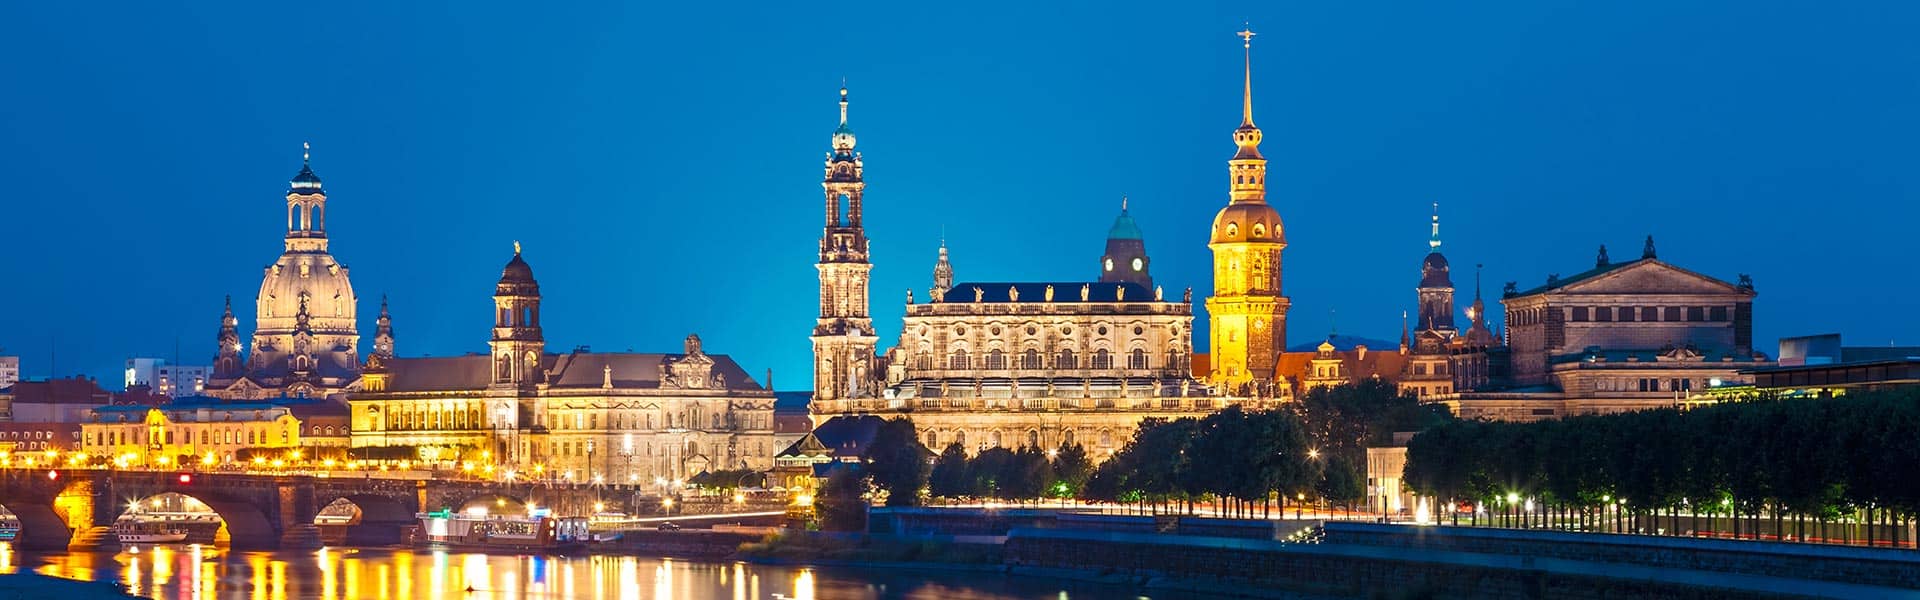 Sakral phänomenal: Besuchen Sie die Frauenkirche Dresden.